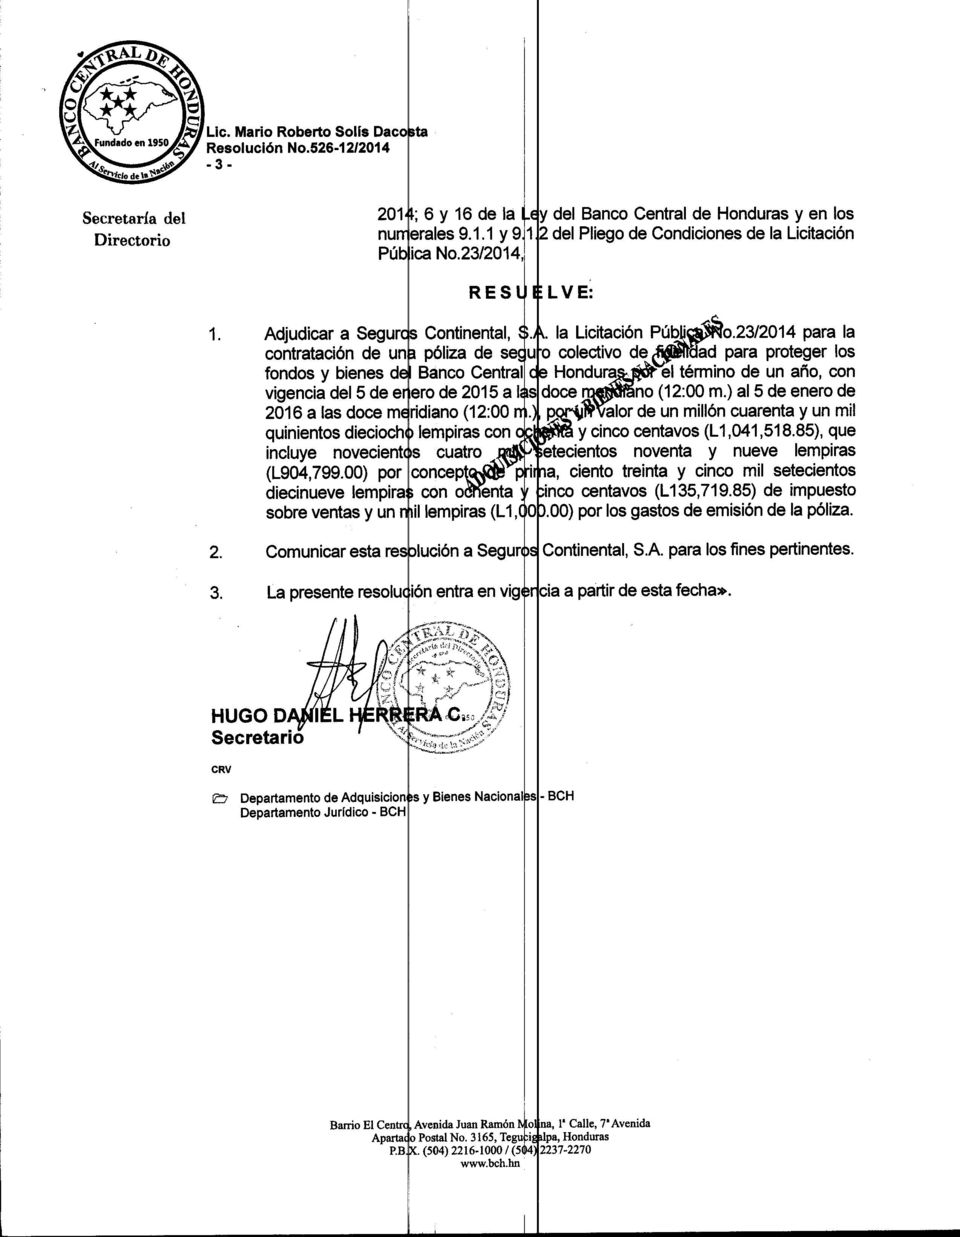 para proteger los fondos y bienes d Banco Central Hondura' el término de un año, con vigencia del 5 de e ero de 2015 a I s doce no (12:00 m.) al5 de enero de 2016 a las doce m ridiano (12:00.